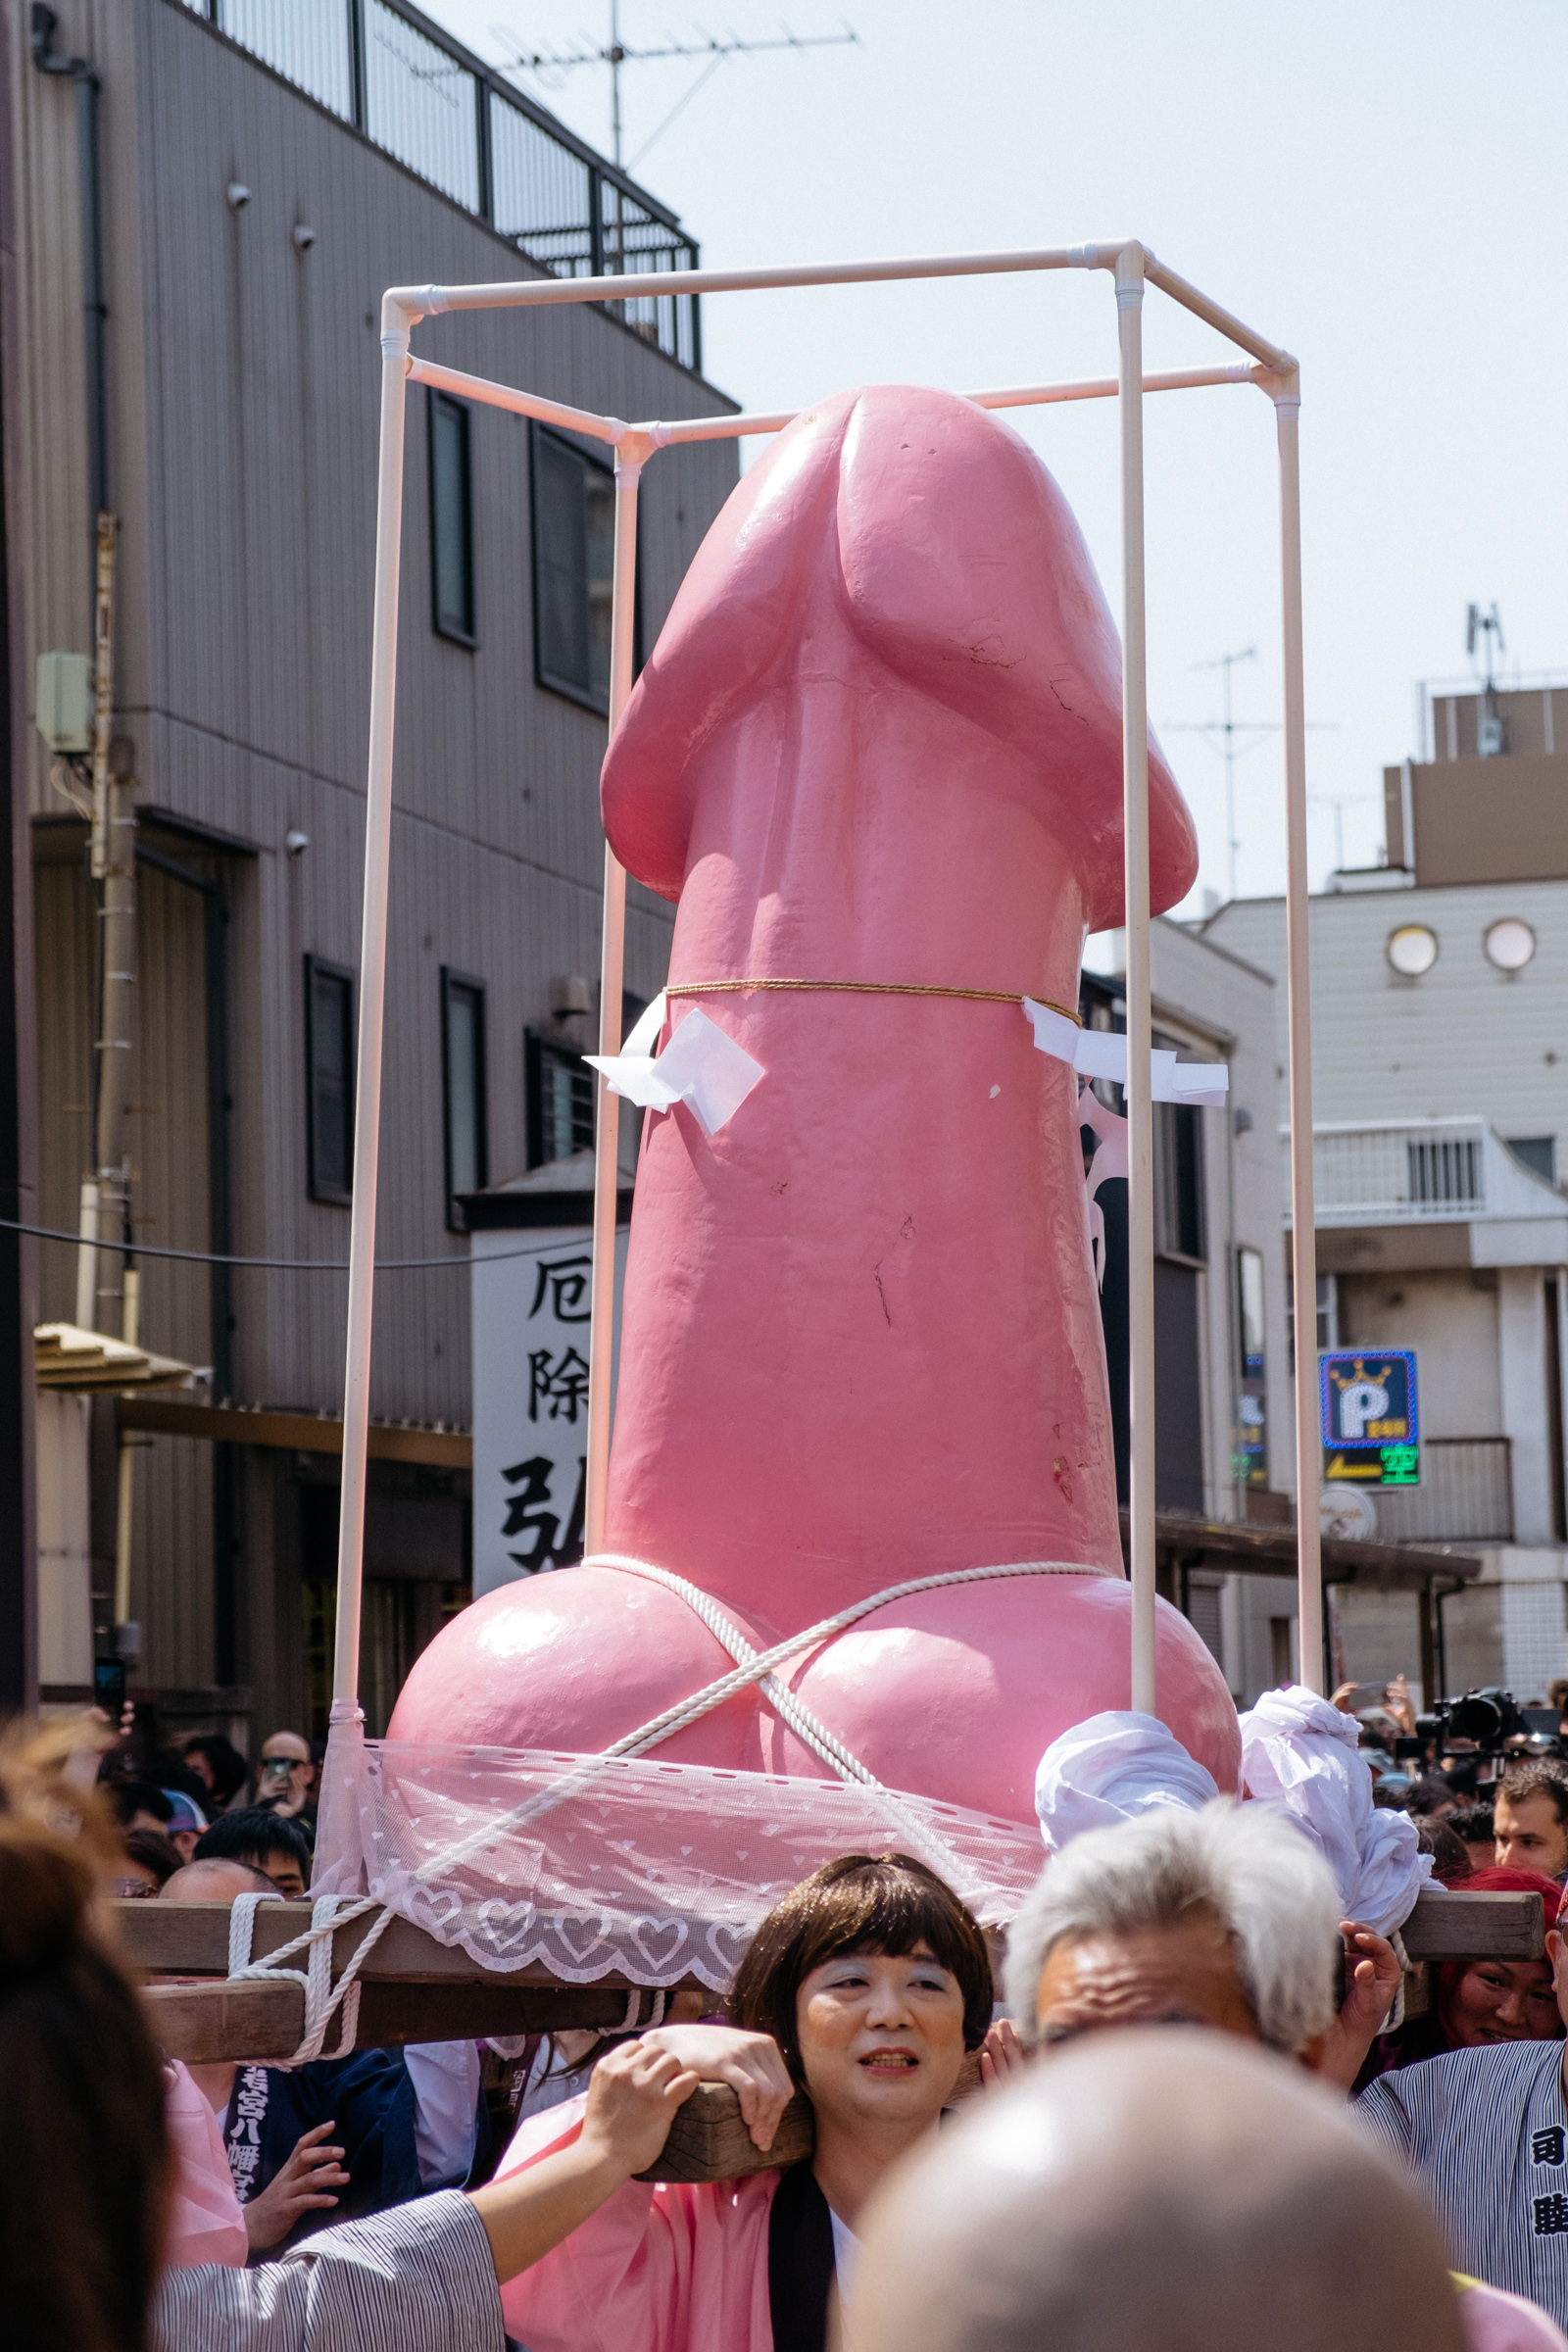 Japanese Dick Festival